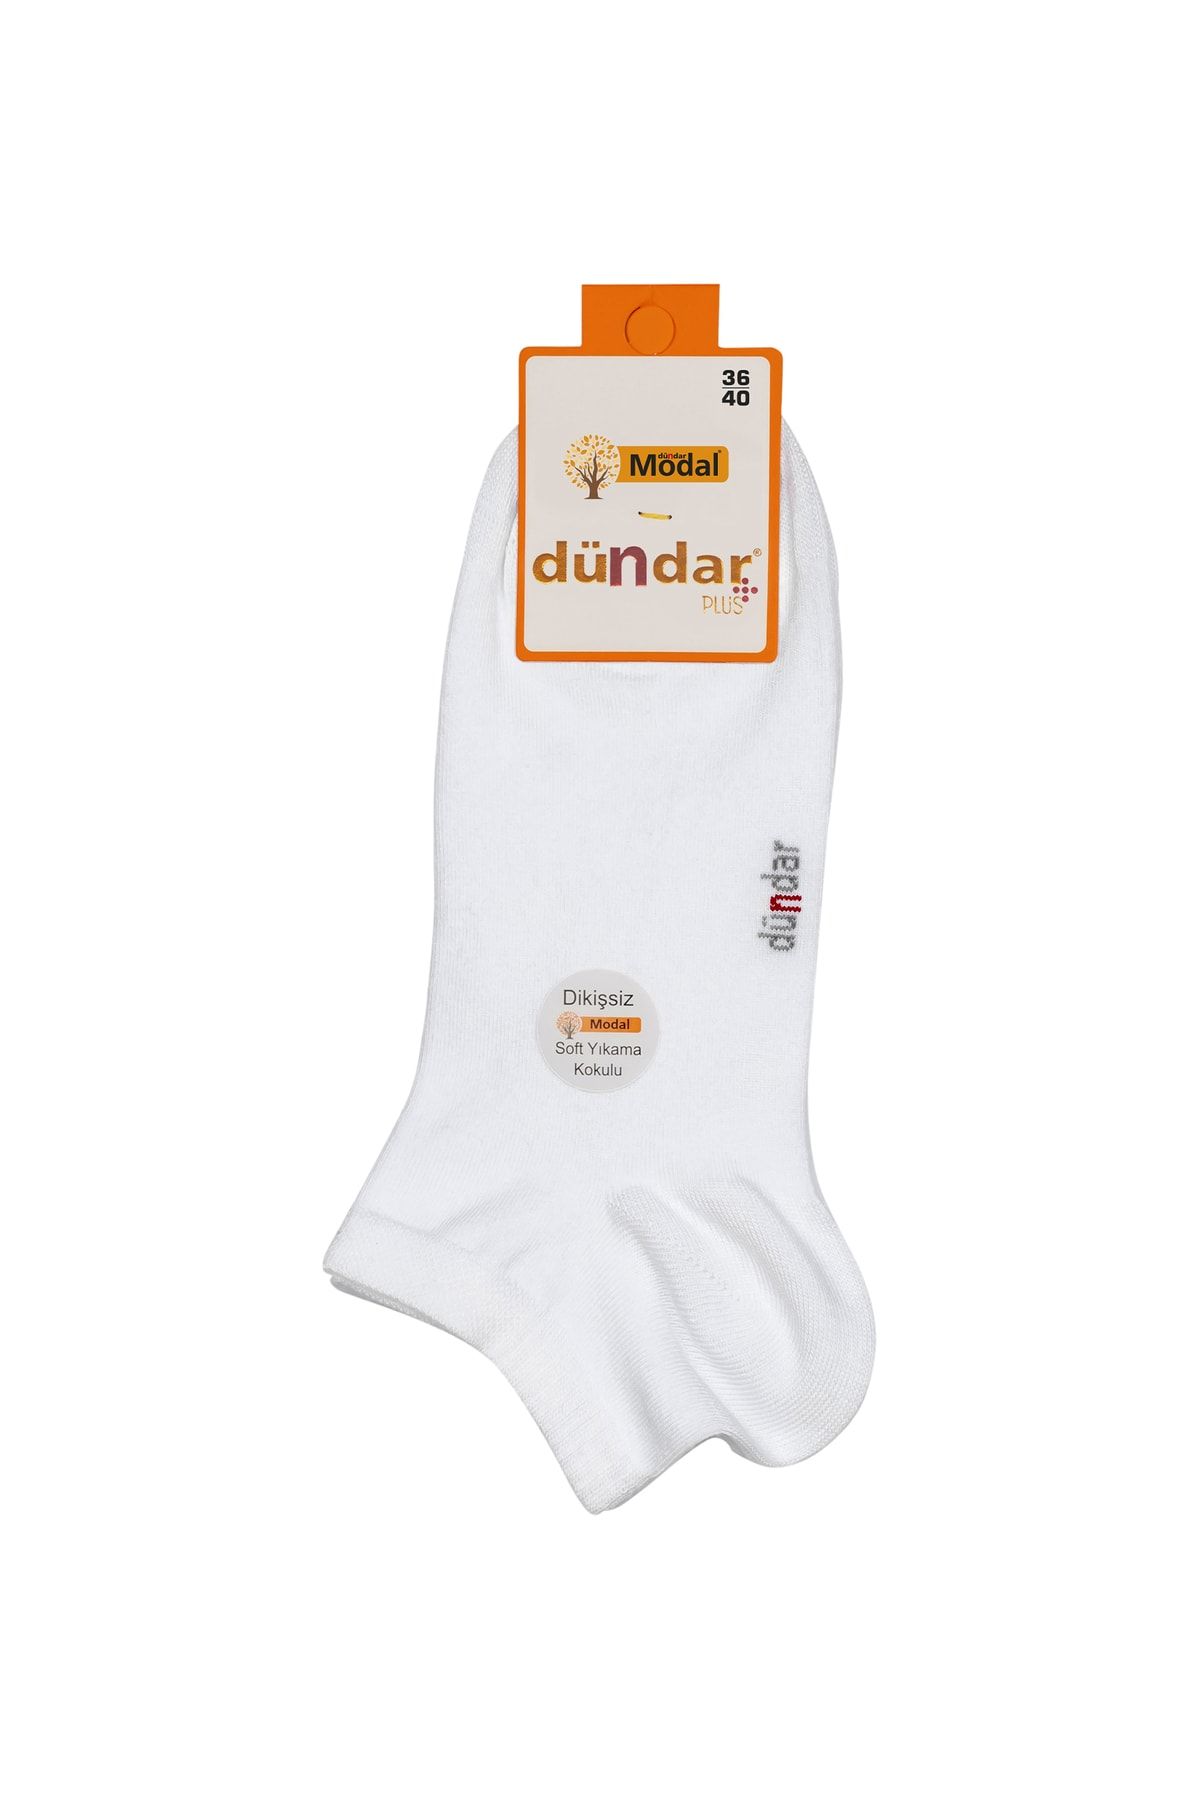 Dündar Kadın Modal Patik Çorap 4506 6'lı Paket